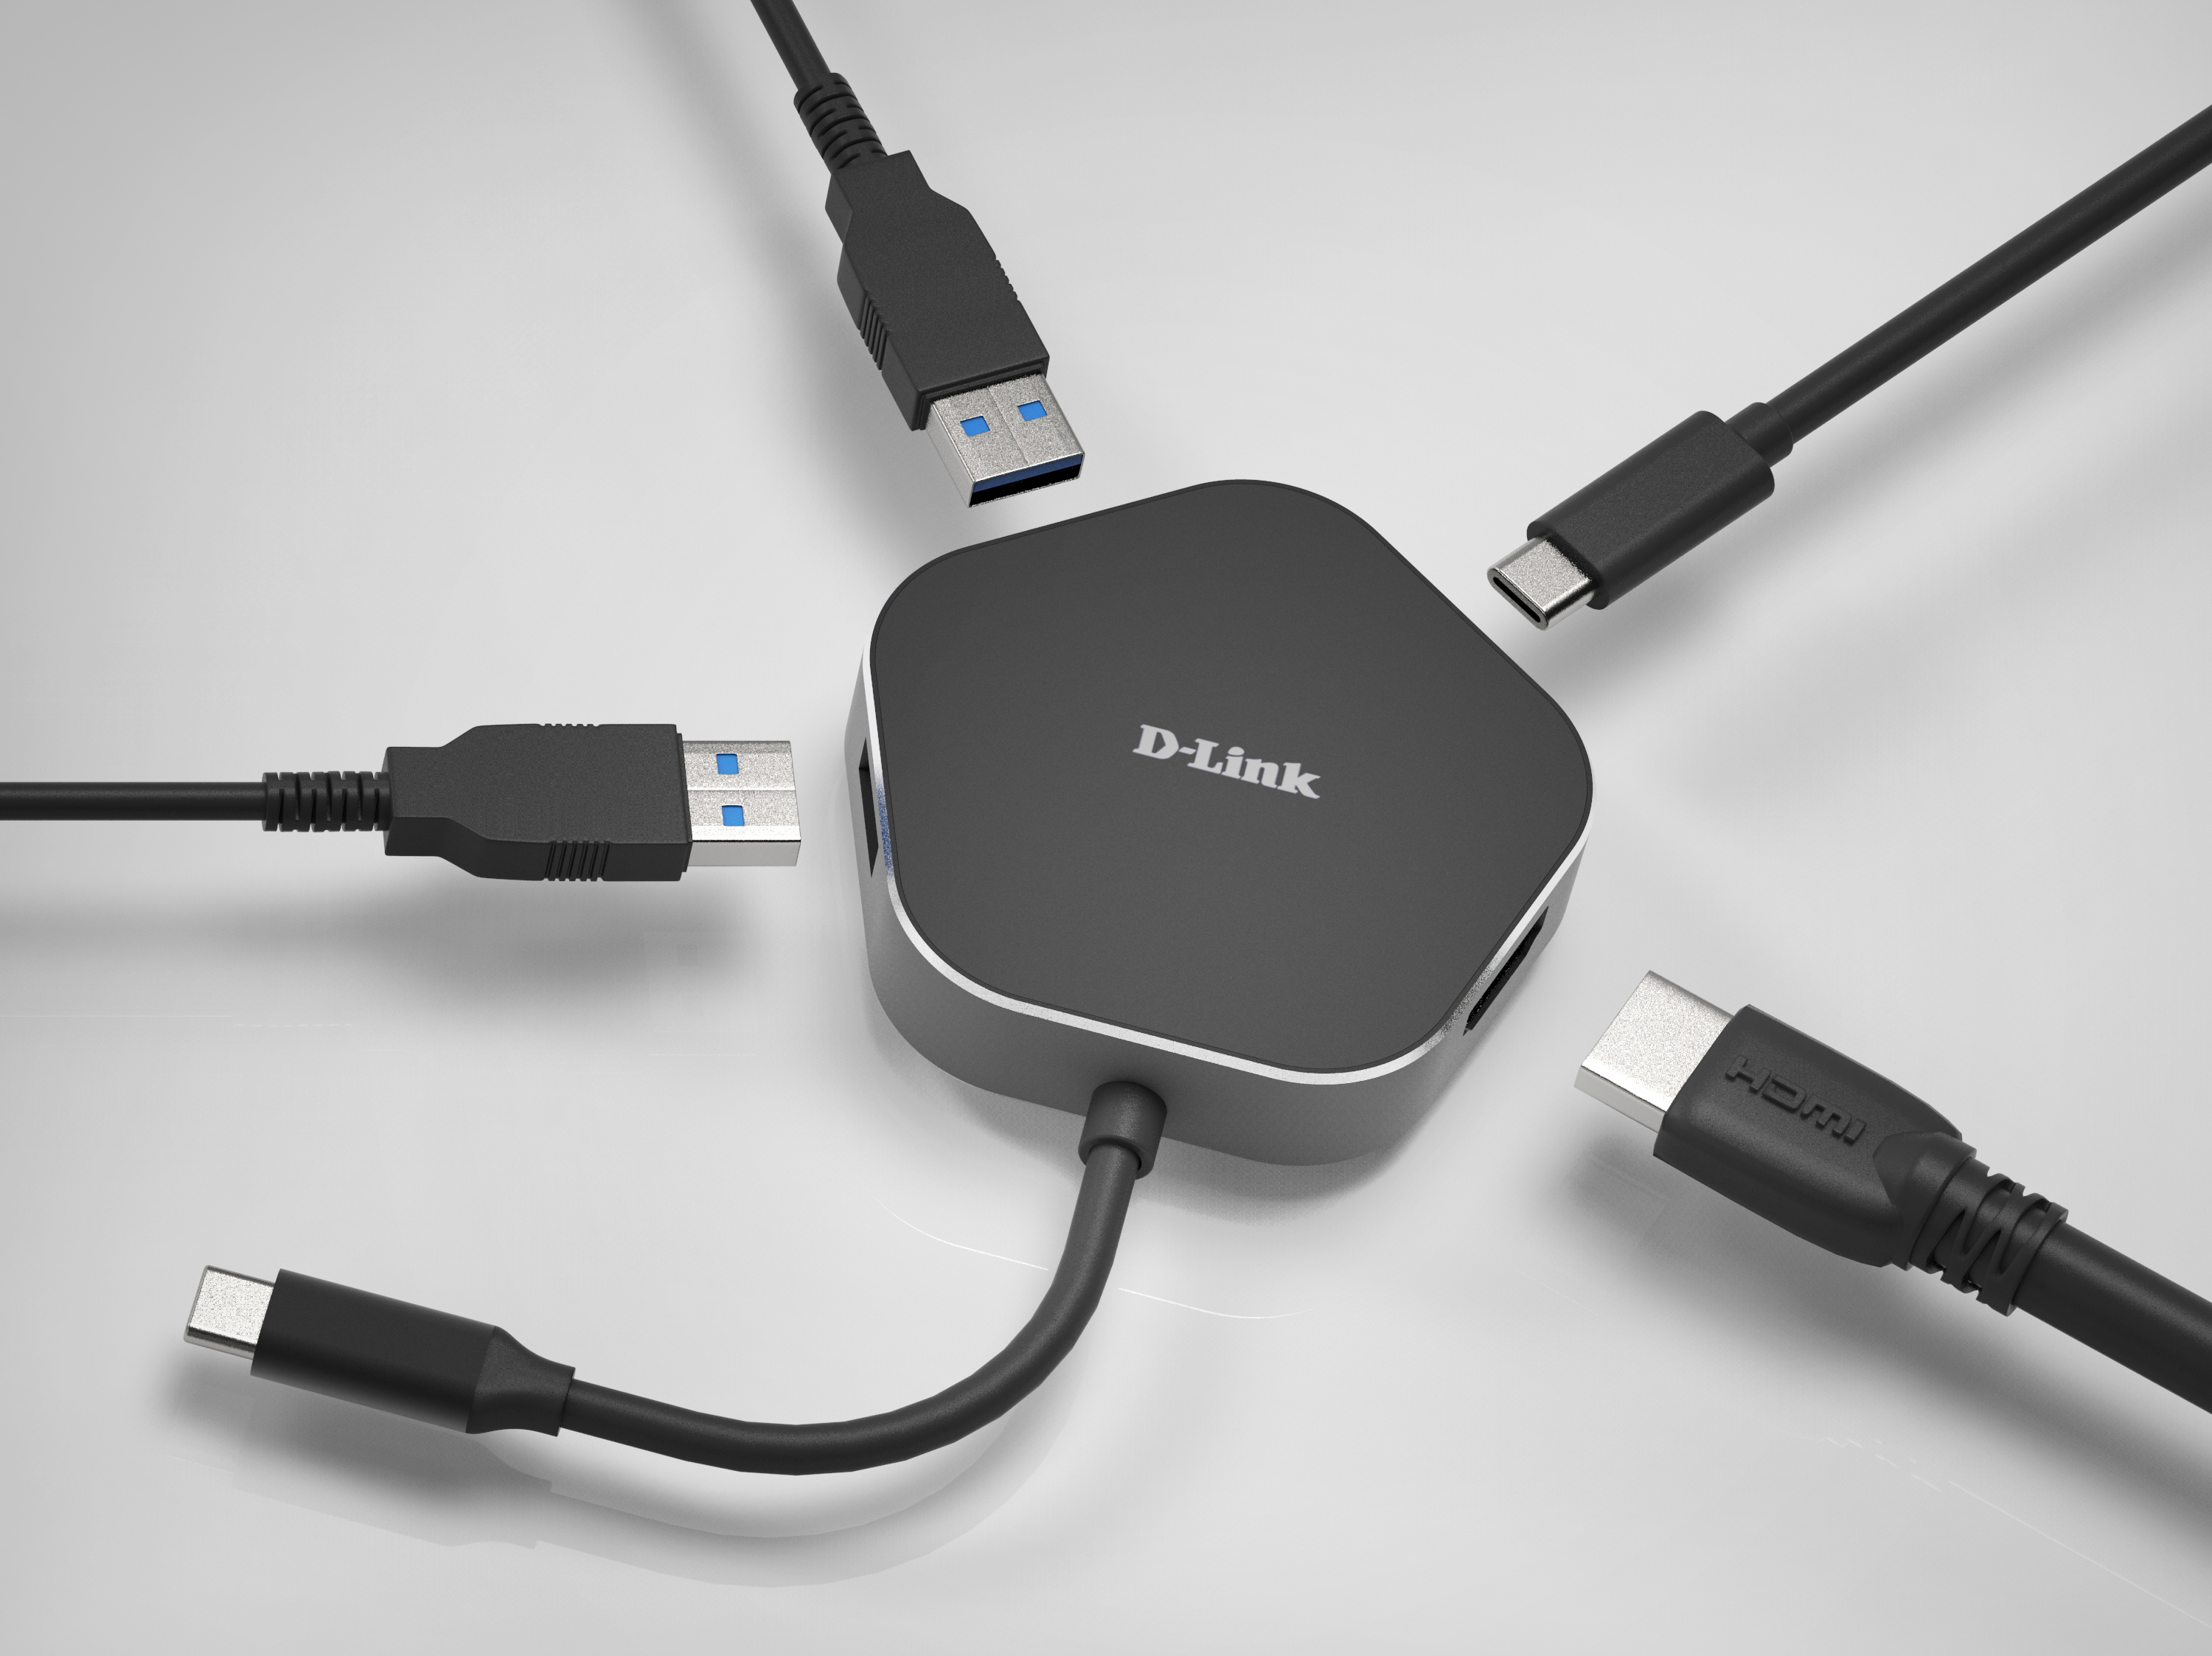 DUB-M520 Hub USB-C 5 en 1 con HDMI/Ethernet y suministro eléctrico